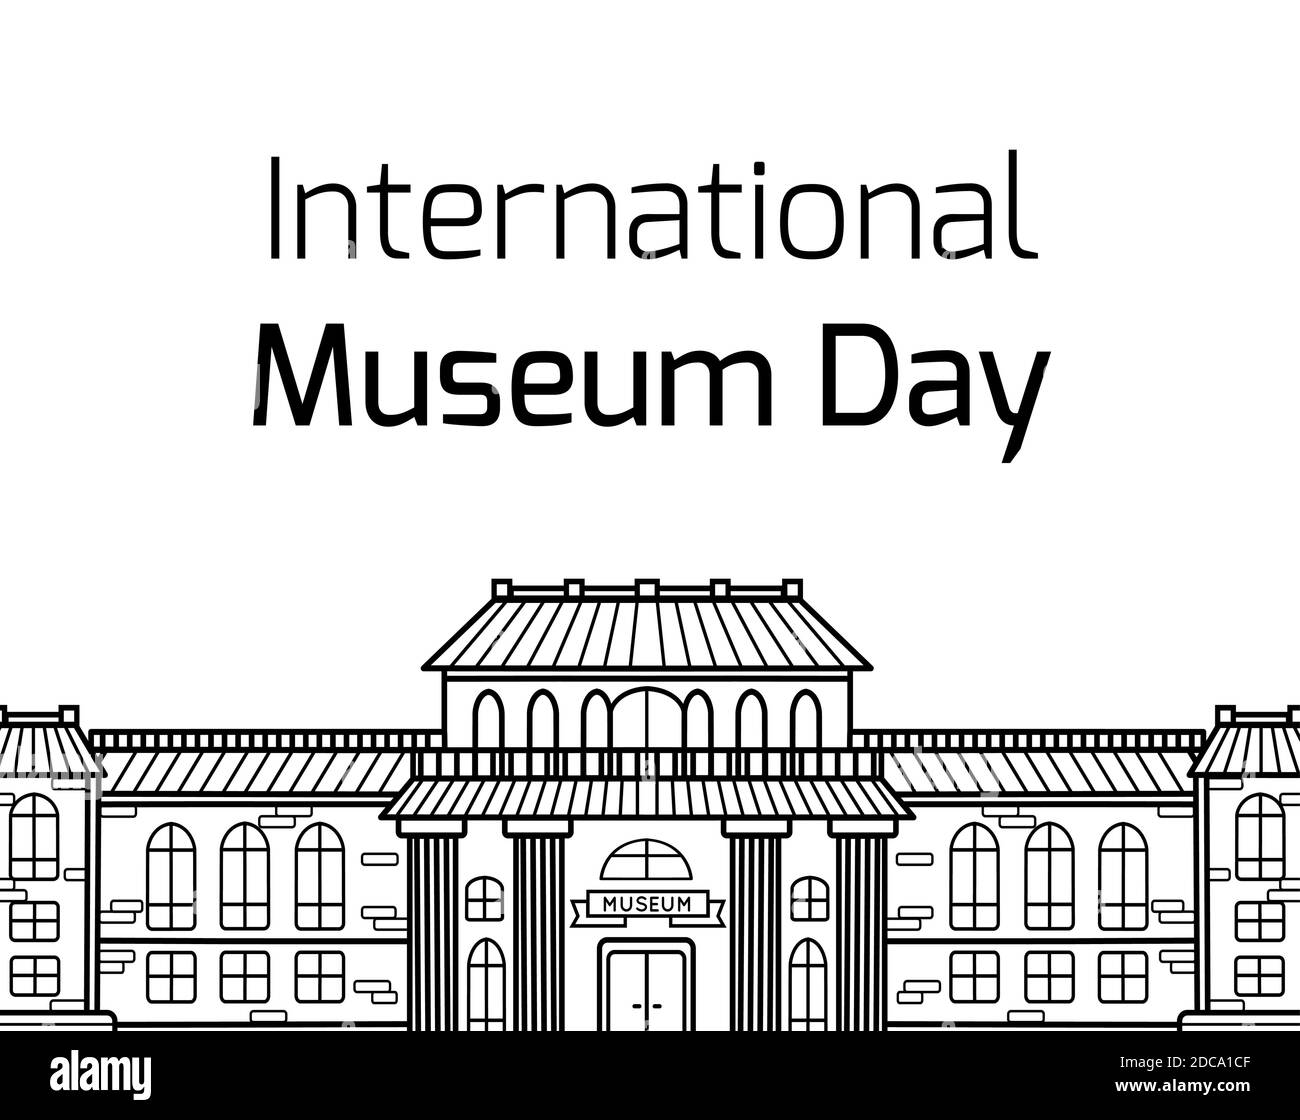 Internationaler Museumstag. Konturzeichnung der Fassade des Museumsgebäudes mit Schriftzug auf weißem Hintergrund. Vektor horizontale Karte für Banner Stock Vektor